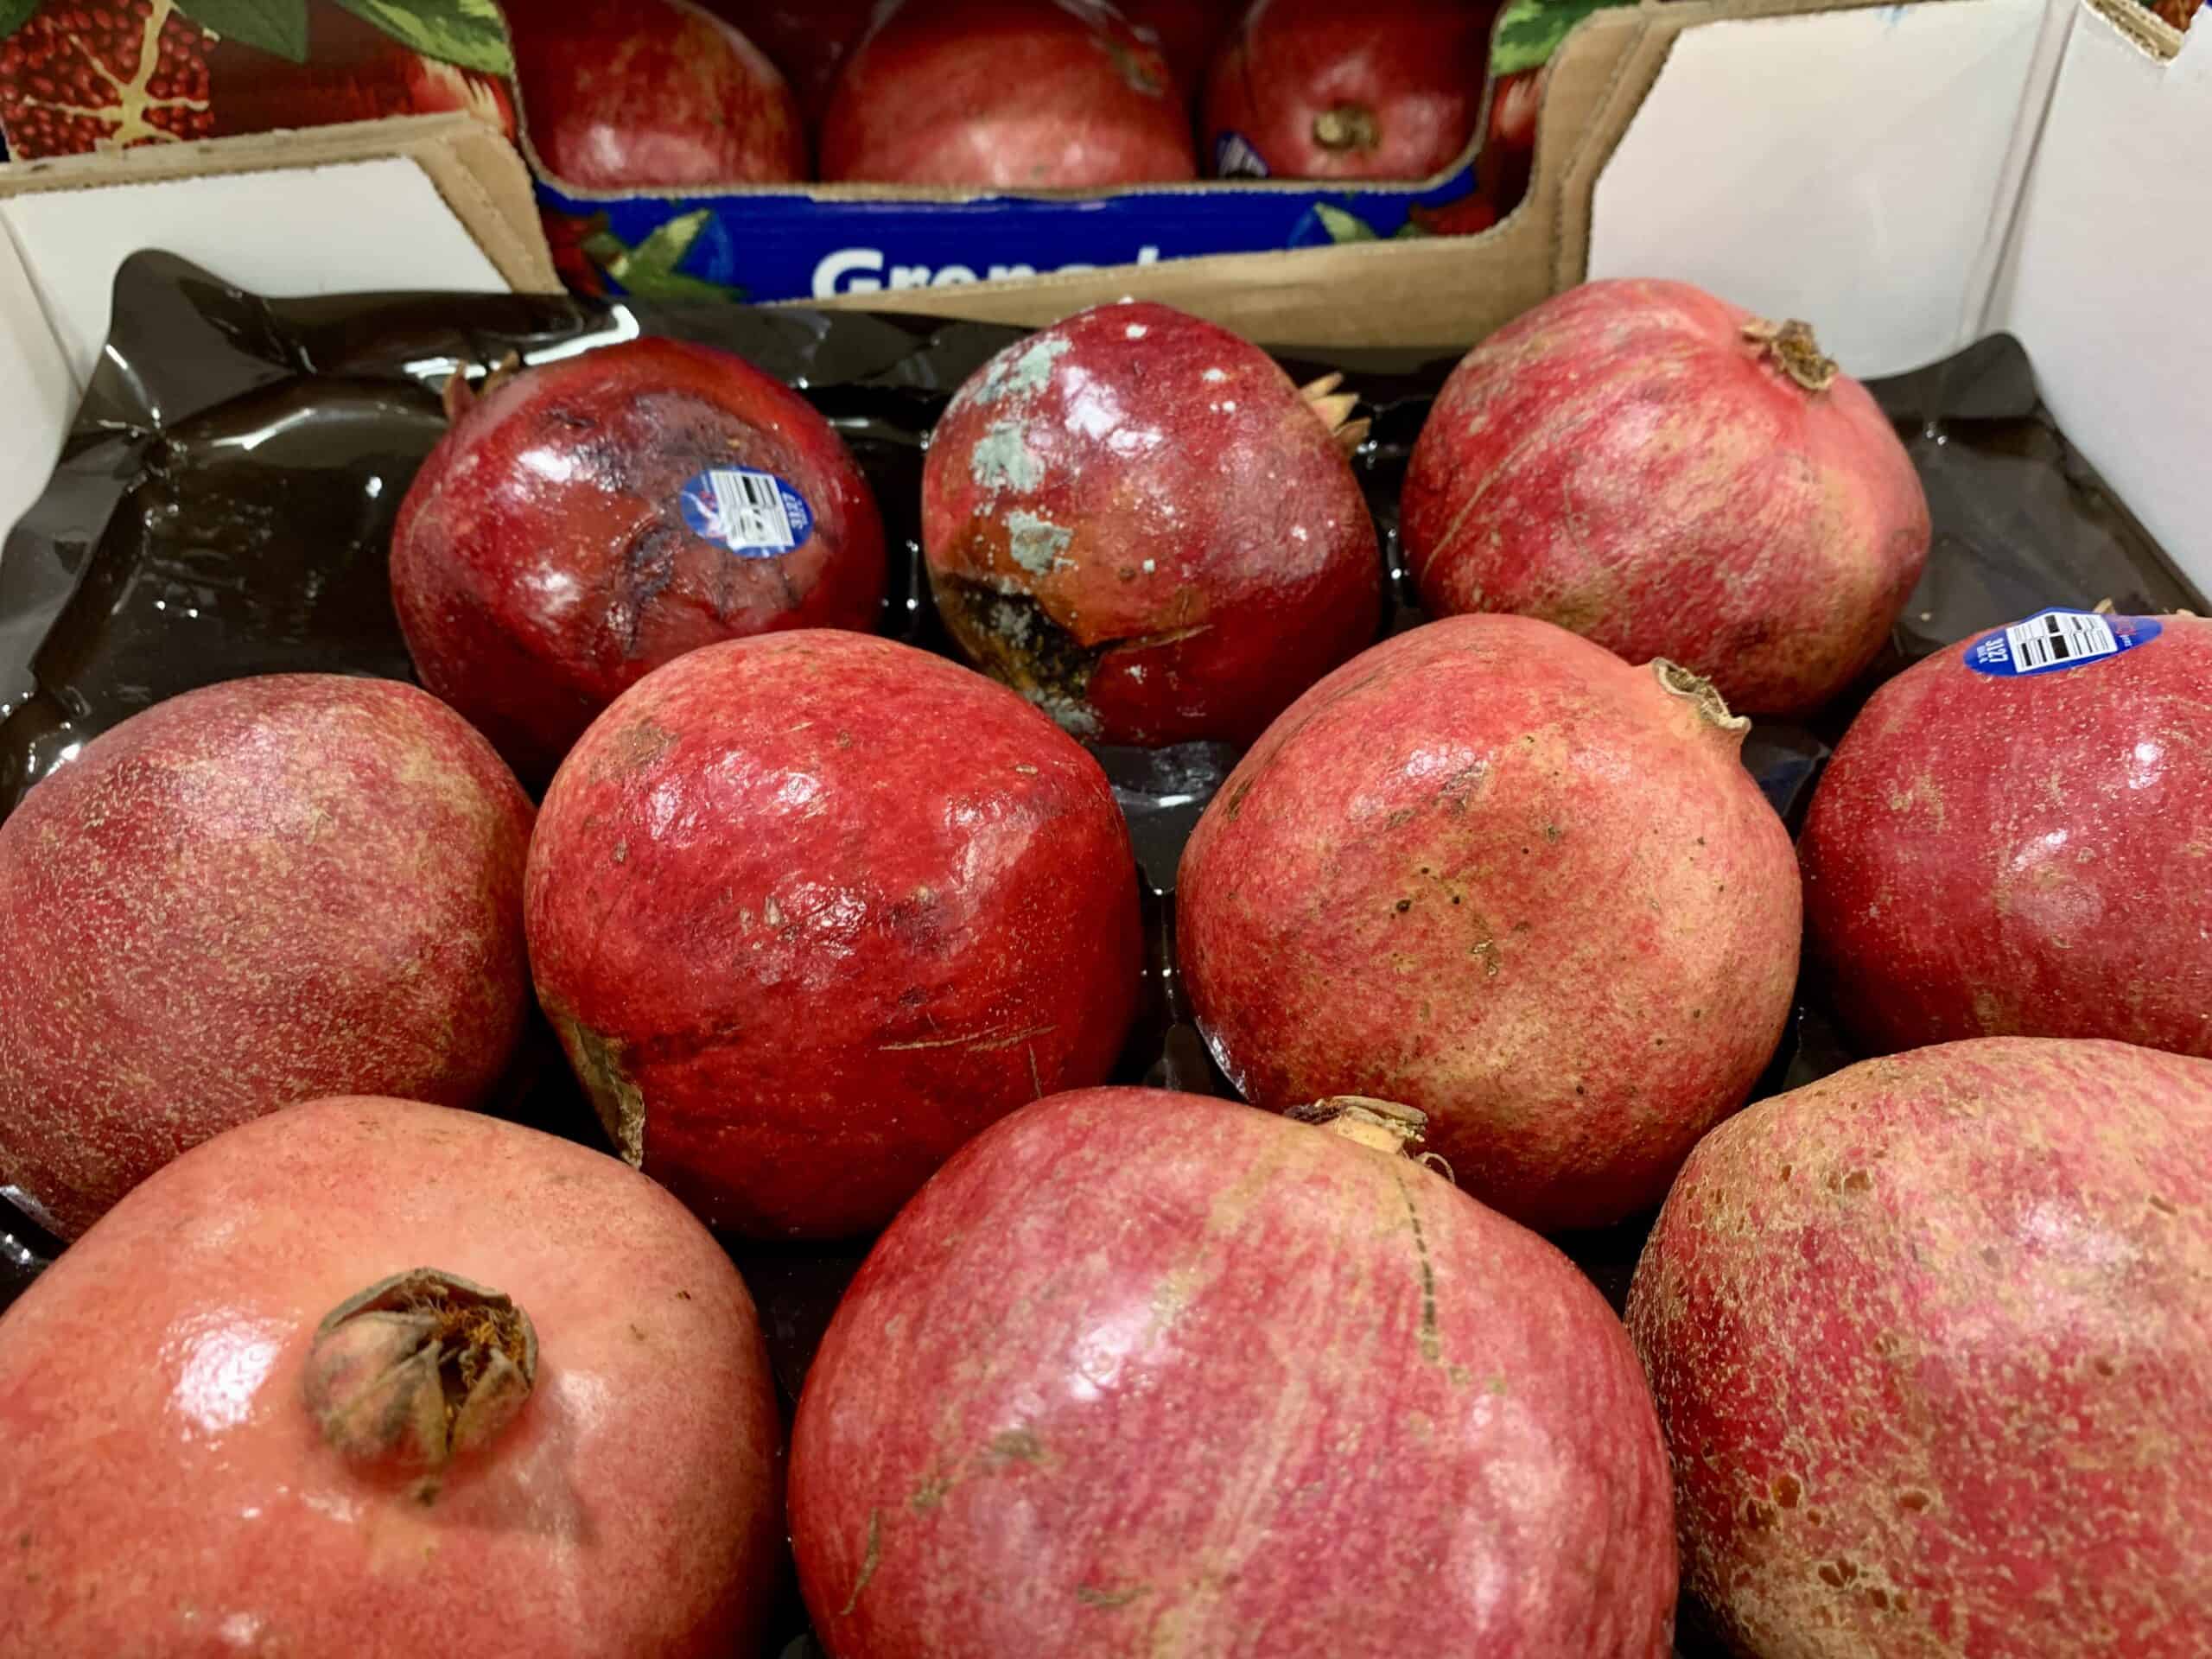 moldy pomegranates at the store